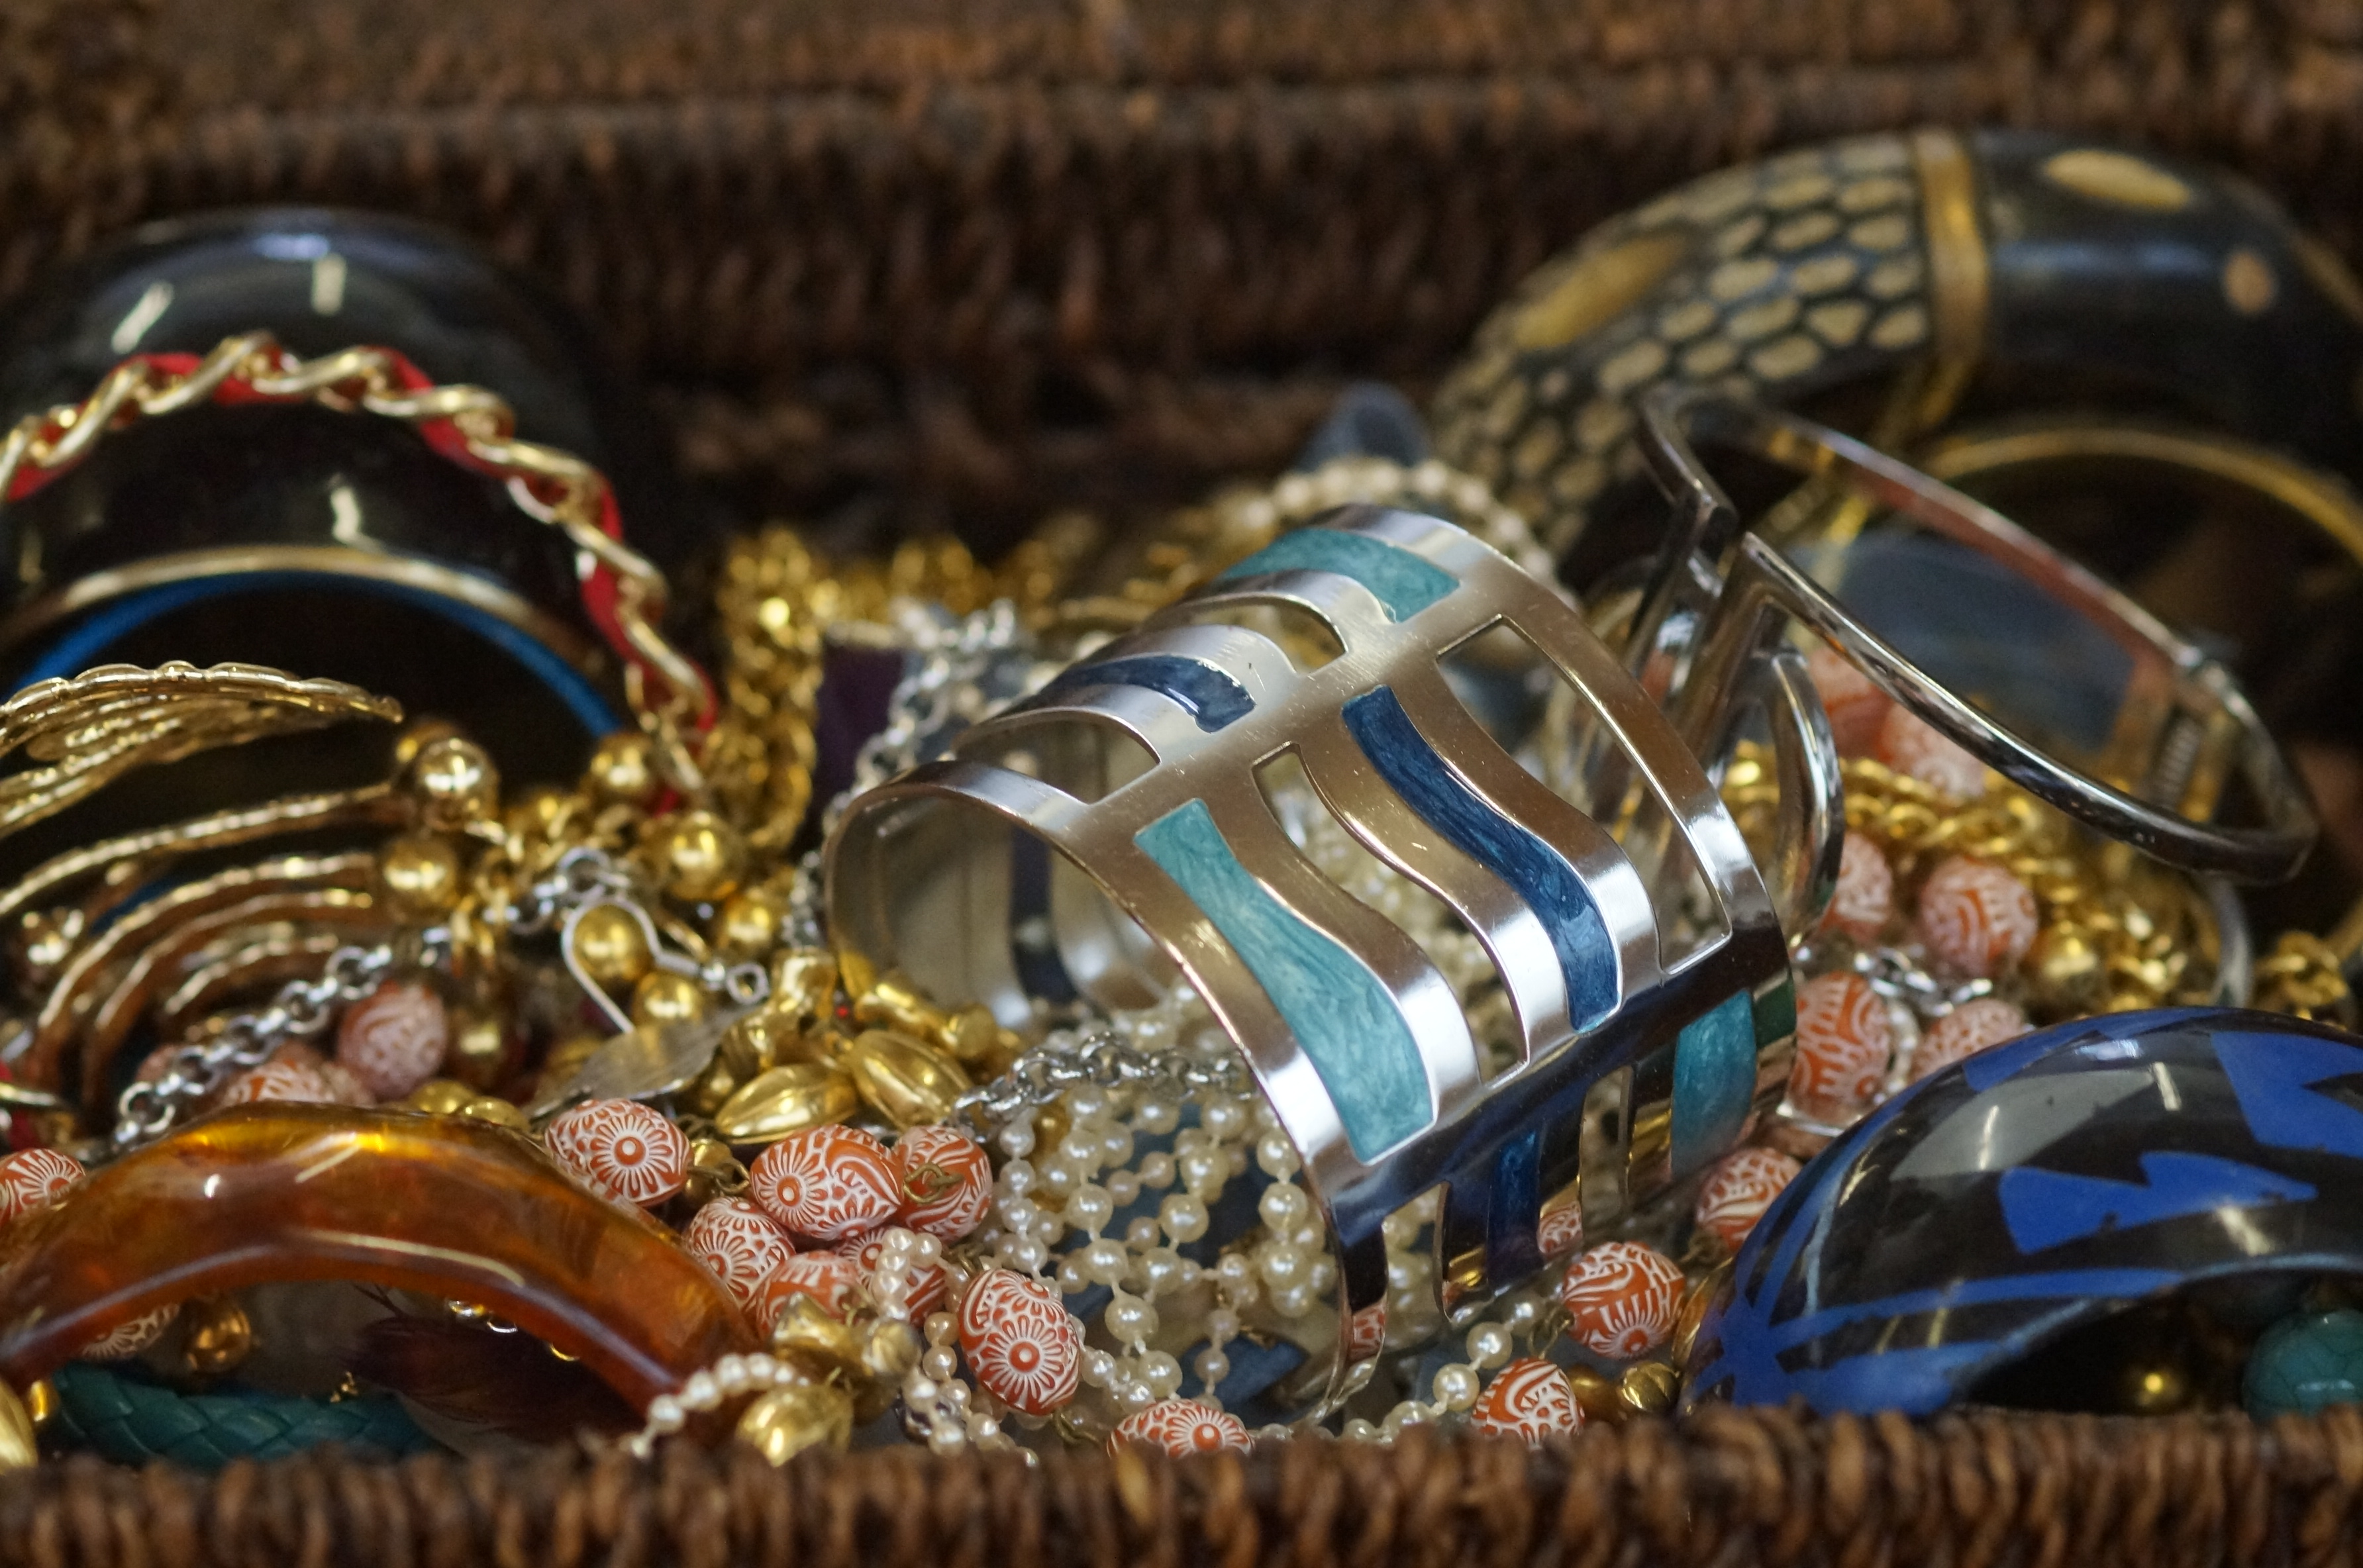 Basket of costume jewellery